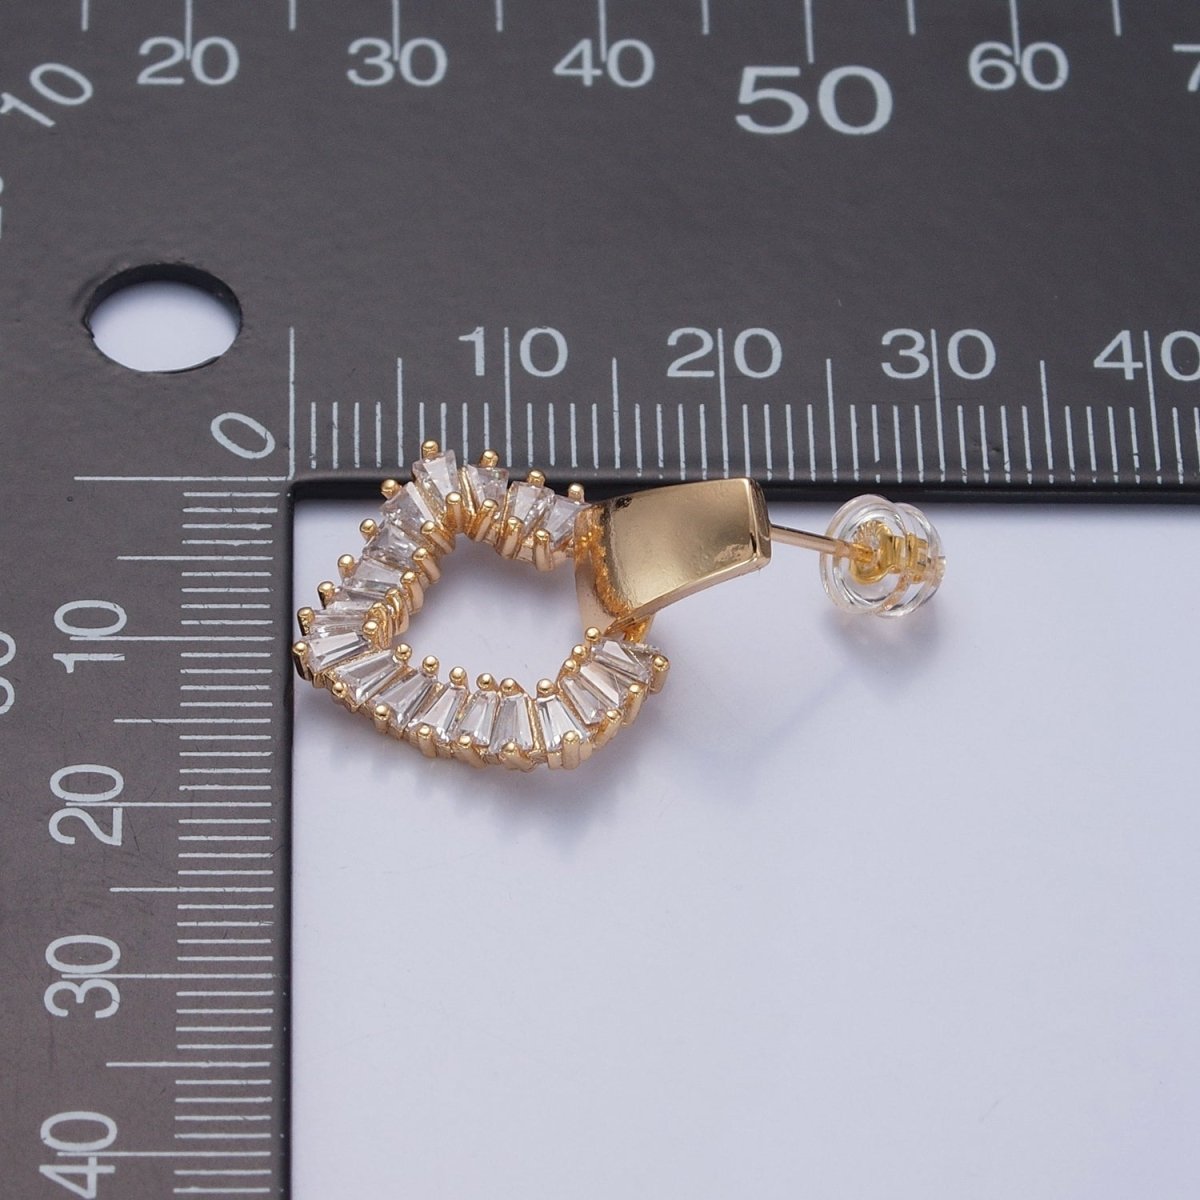 Baguette Earrings, Dainty Gold Earrings, Triangle Earrings, Brass CZ Studs, Geometric Stud Earring V-382 - DLUXCA